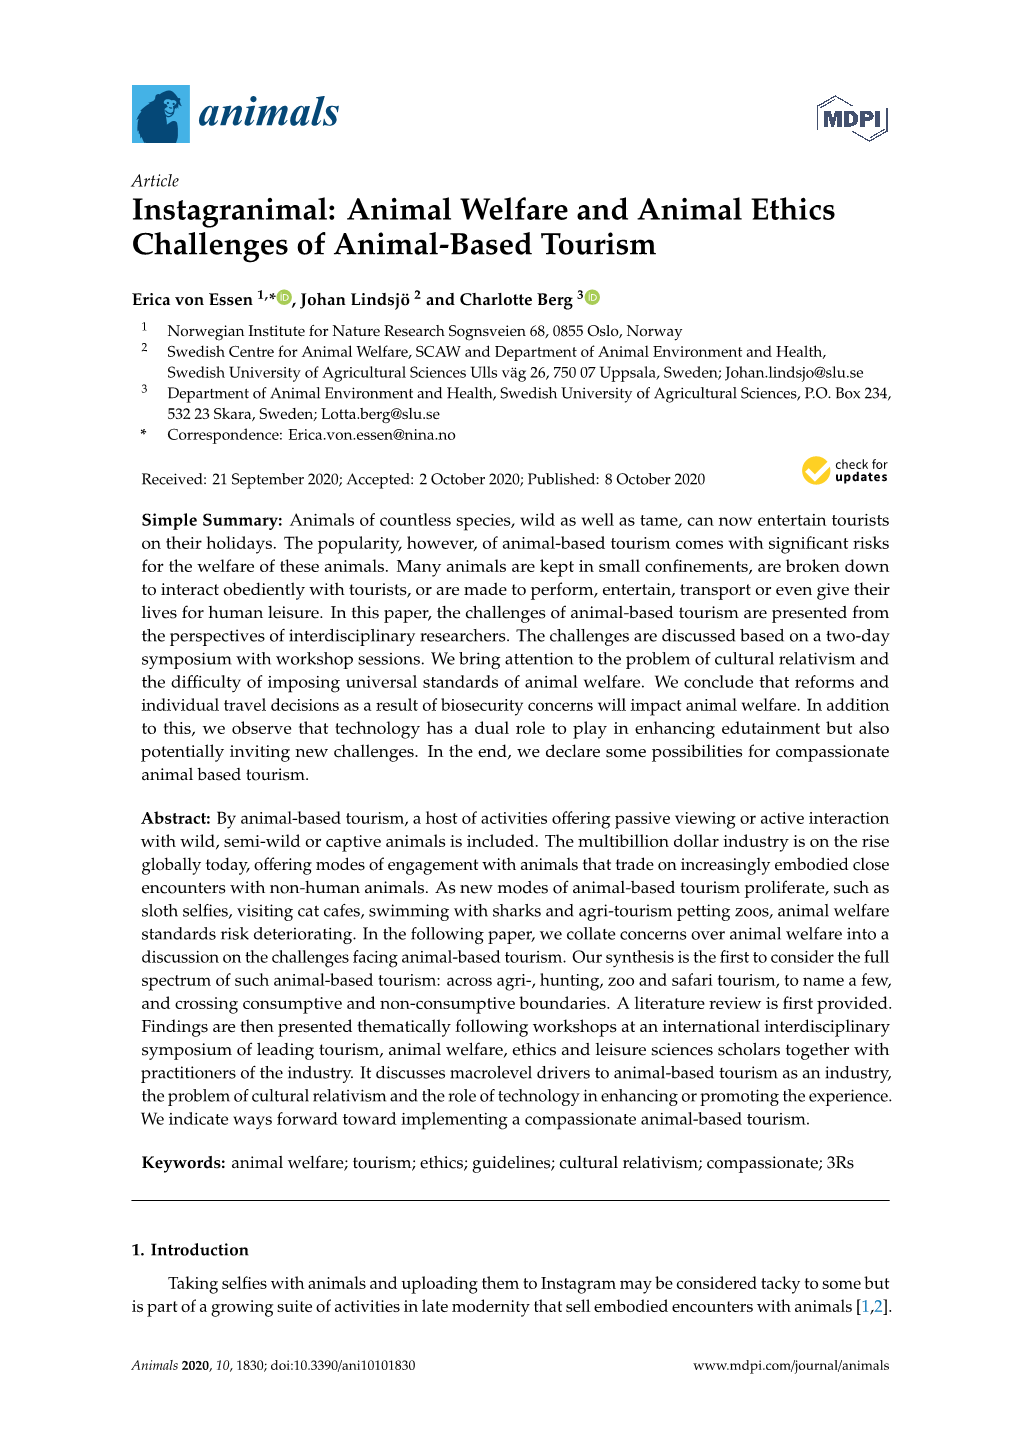 Animal Welfare and Animal Ethics Challenges of Animal-Based Tourism